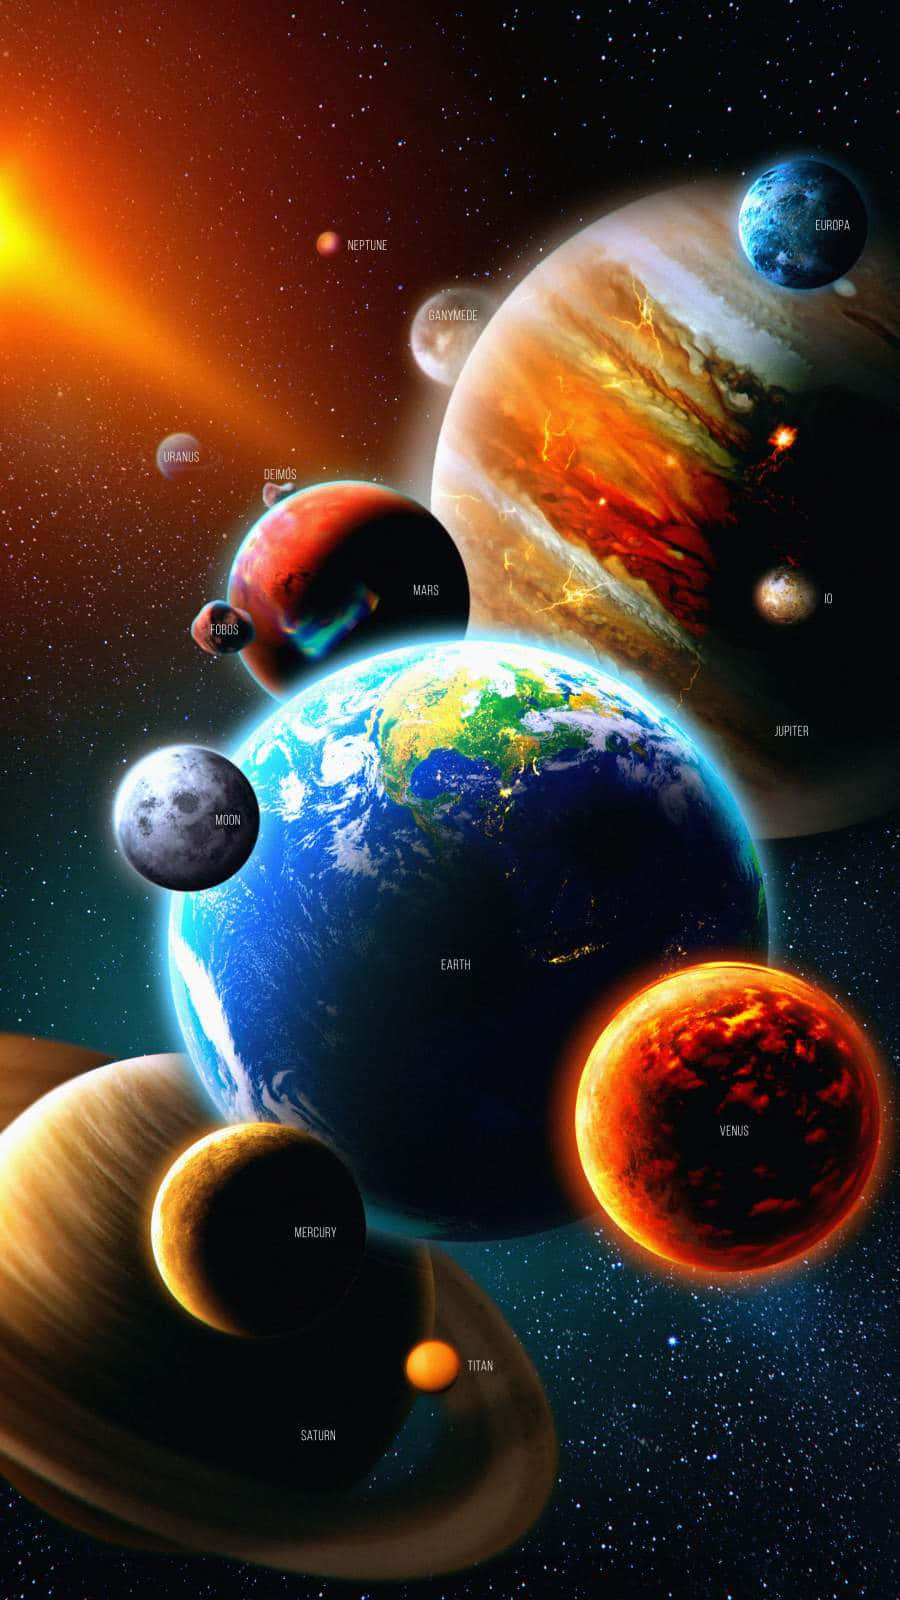 Planetasdel Sistema Solar Con Sus Respectivas Lunas Fondo de pantalla